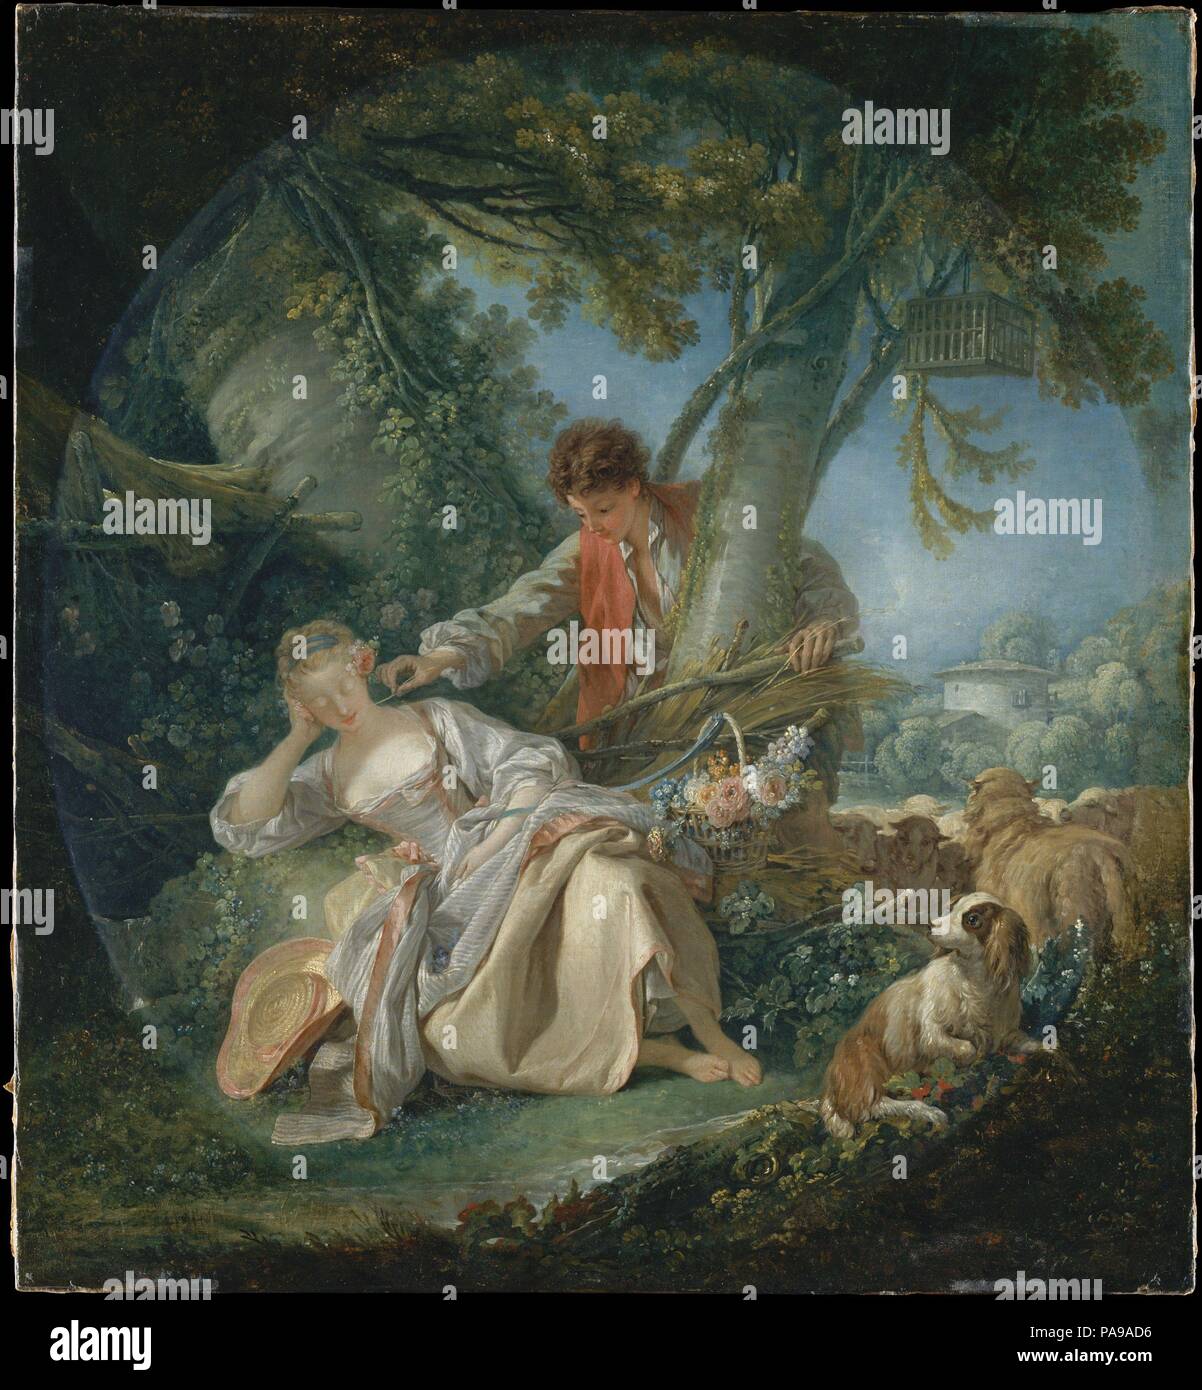 Den unterbrochenen Schlaf. Künstler: François Boucher (Französisch, Paris 1703-1770 Paris). Abmessungen: Insgesamt 32 1/4 x 29 5/8 in. (81,9 x 75,2 cm); Oberfläche lackiert (unregelmäßige ovale) 31 x 27 cm. (78,7 x 70,5 cm). Datum: 1750. Boucher war ein Künstler von unvergleichlicher Virtuosität und der Industrie mit einer Vorliebe für mythologische und pastorale Themen. Hier zeigt er ein schön gekleidet Schäfer und Schäferin. Die Einfachheit des Themas täuscht über die Komplexität der Komposition, die auf einer Reihe von sich kreuzenden Diagonalen organisiert ist. Die Leinwand, bewunderte im Salon von 1753, war einer der beiden Stockfoto